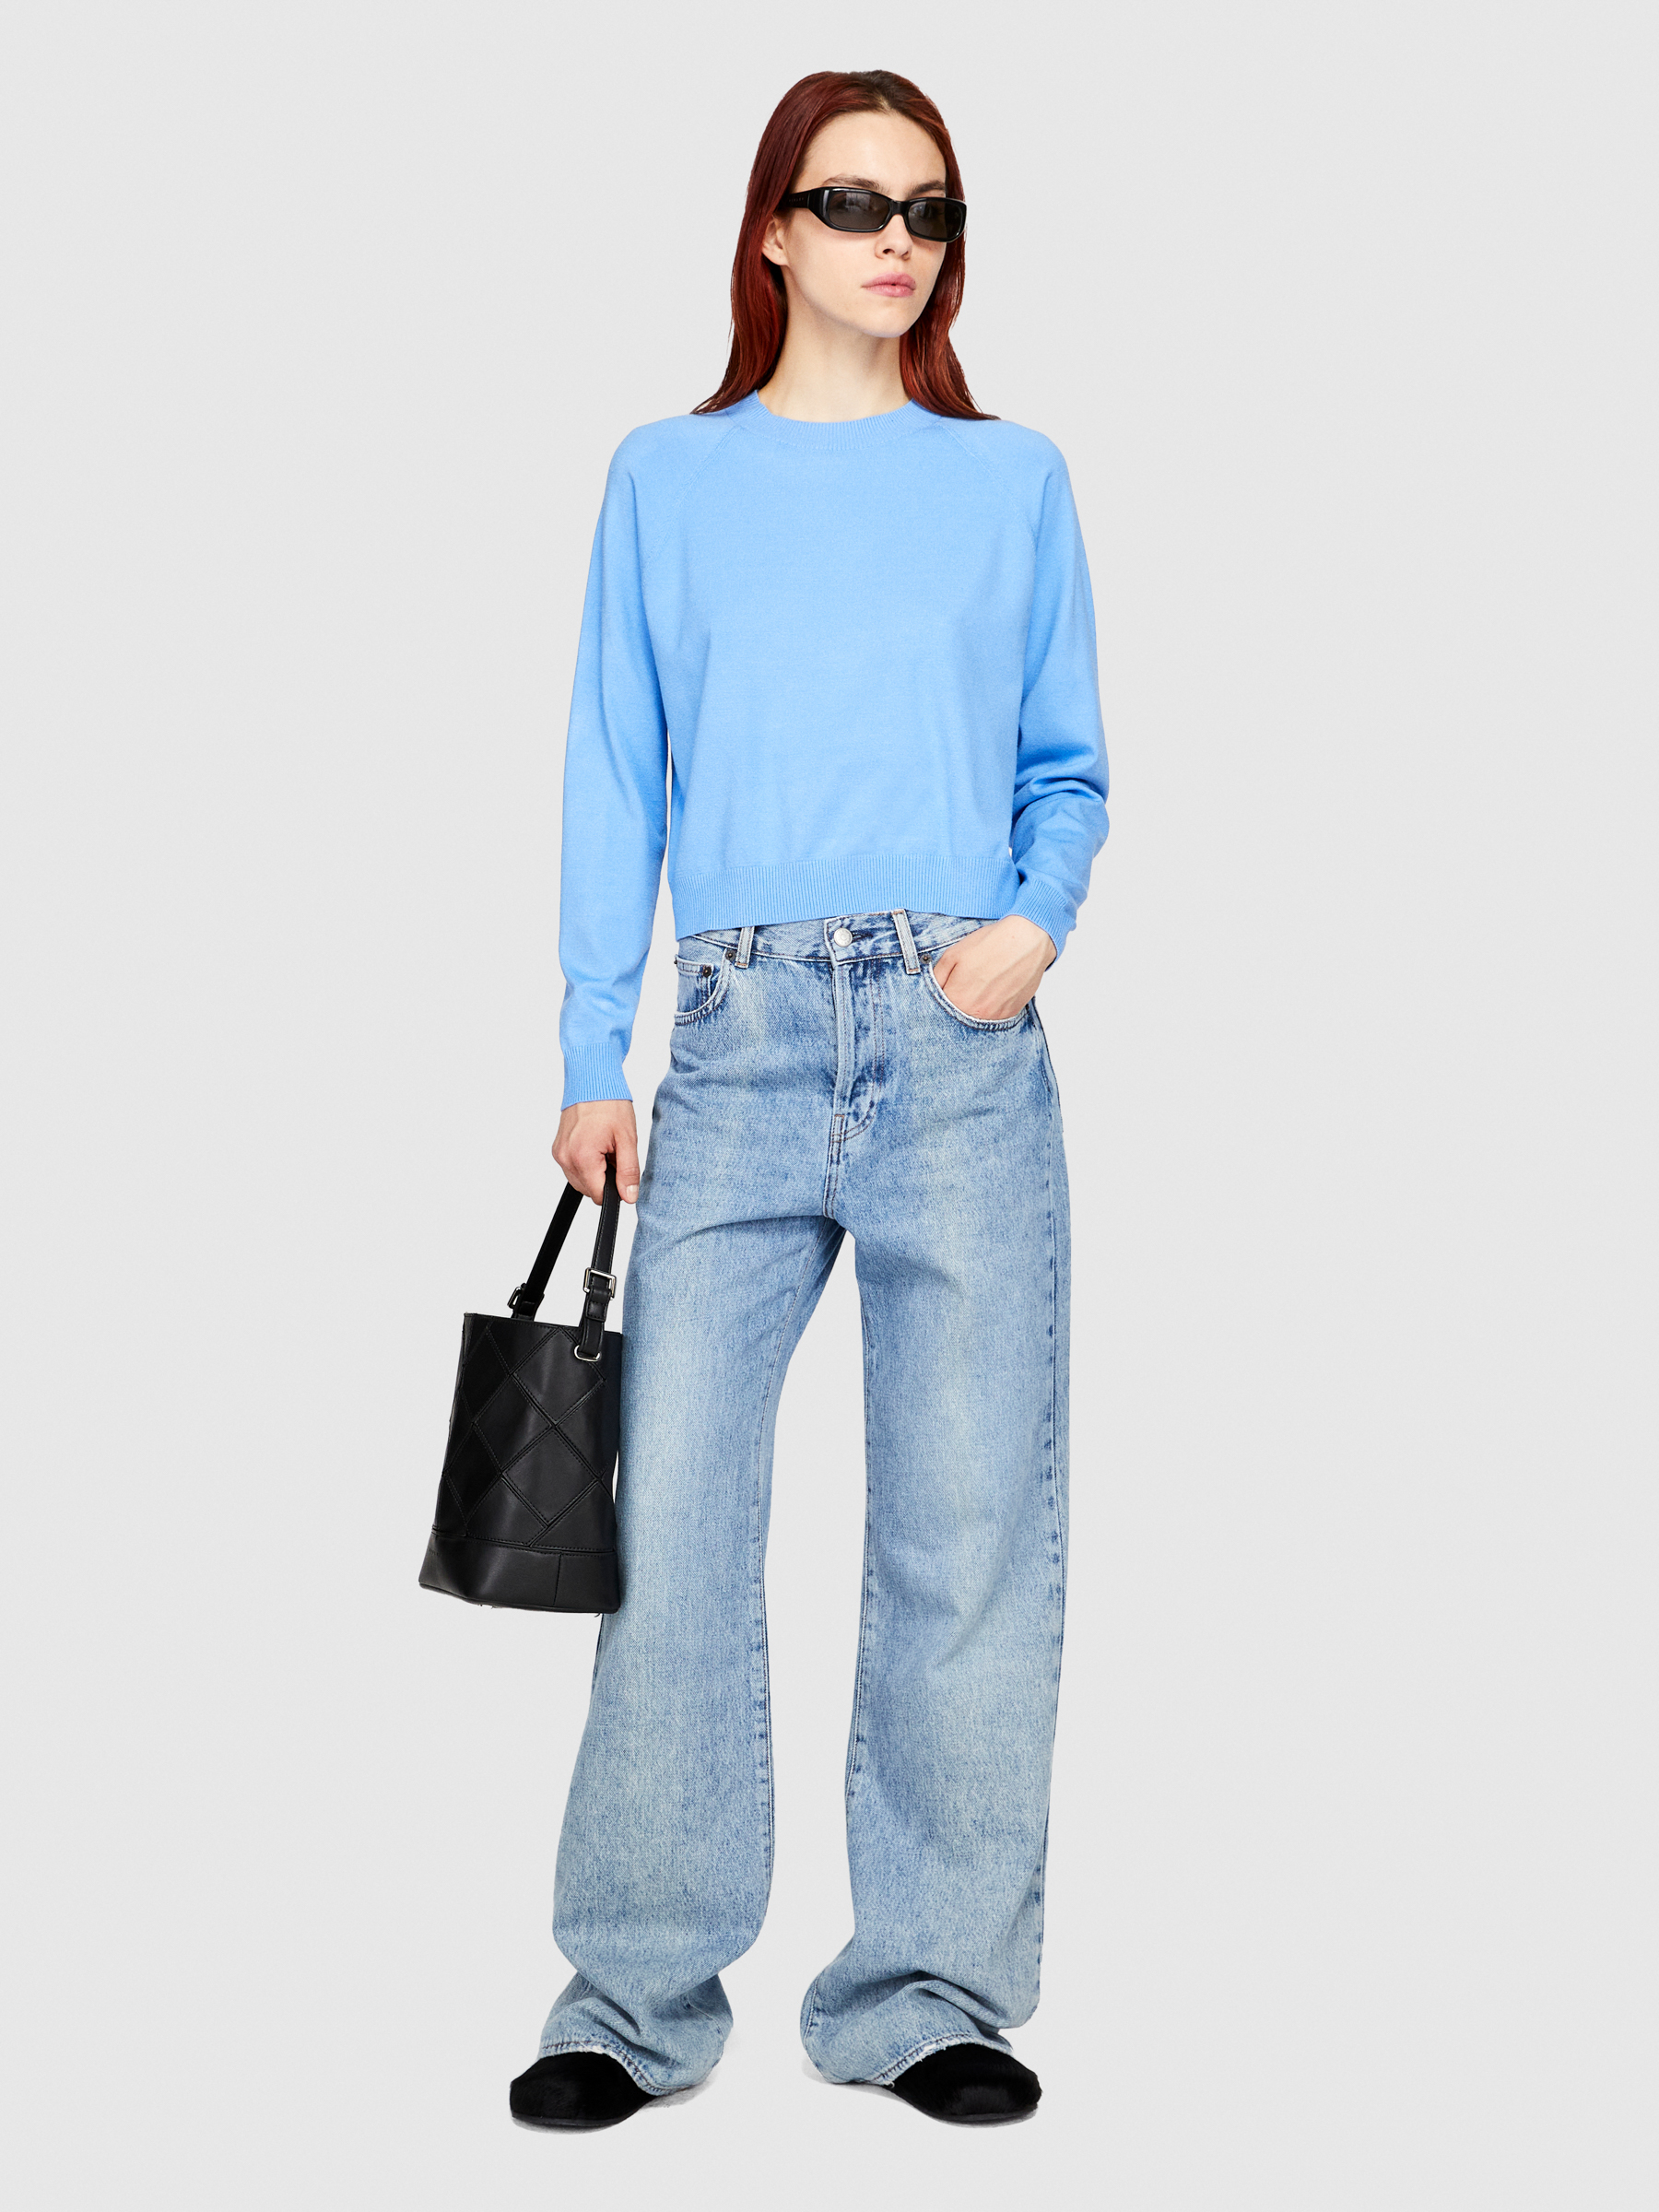 Sisley - Boxy Fit Sweater, Woman, Sky Blue, Size: XS